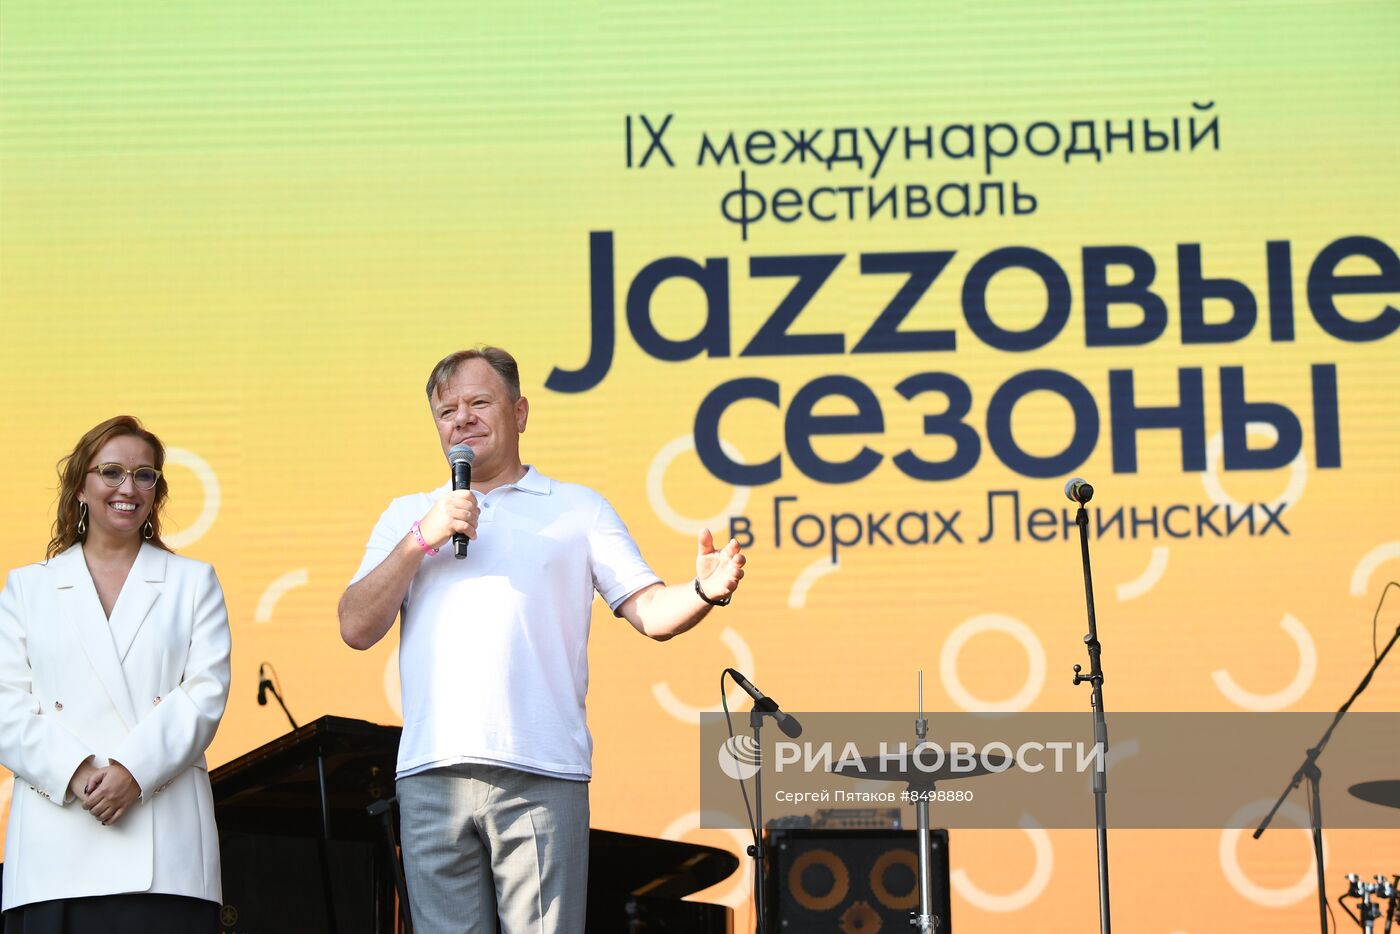 IX Международный фестиваль "Джазовые сезоны"